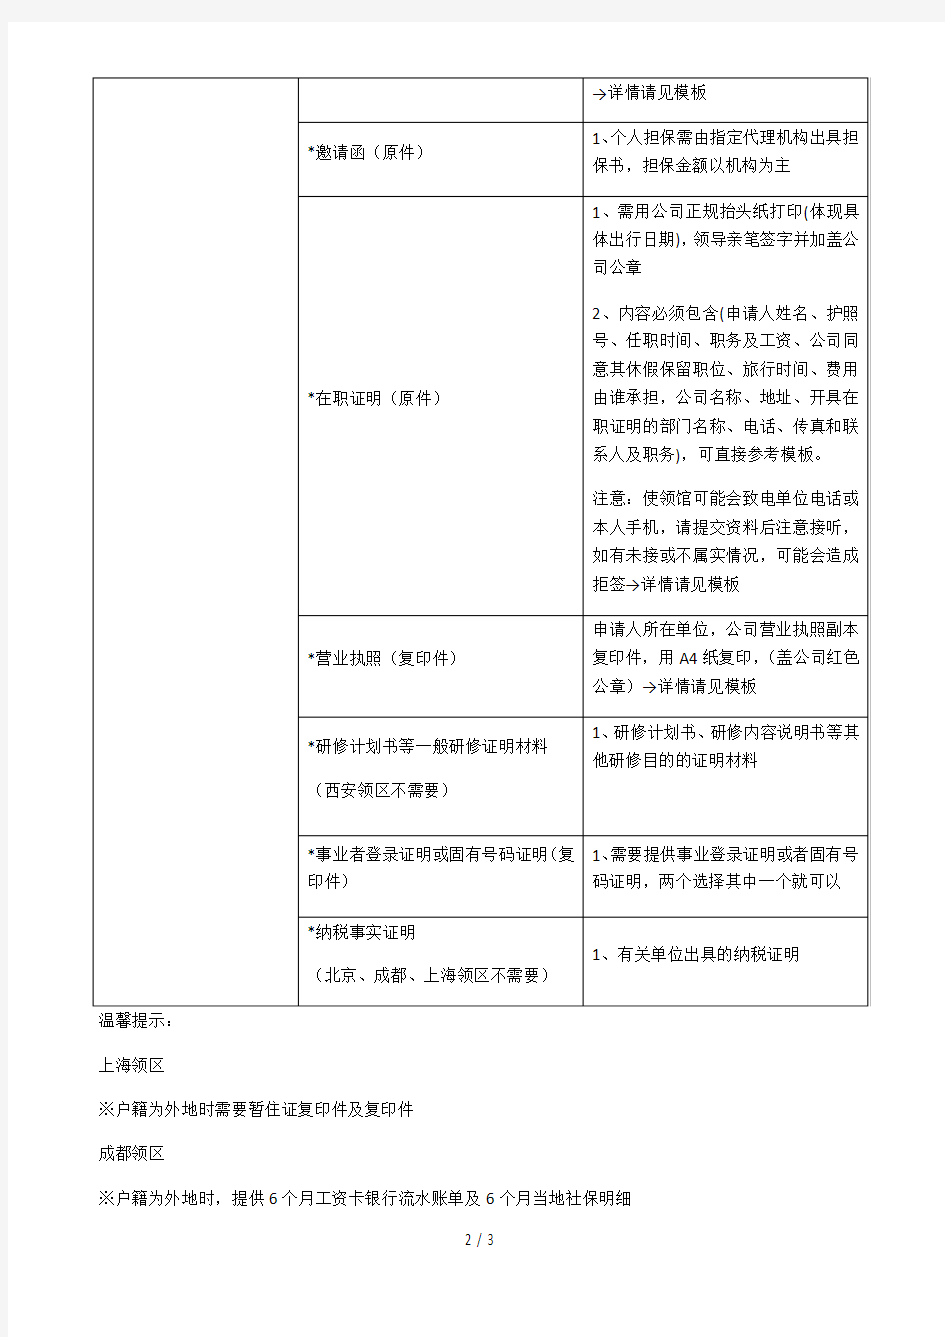 韩国短期一般一般研修人签证所需材料(c31)(单次)